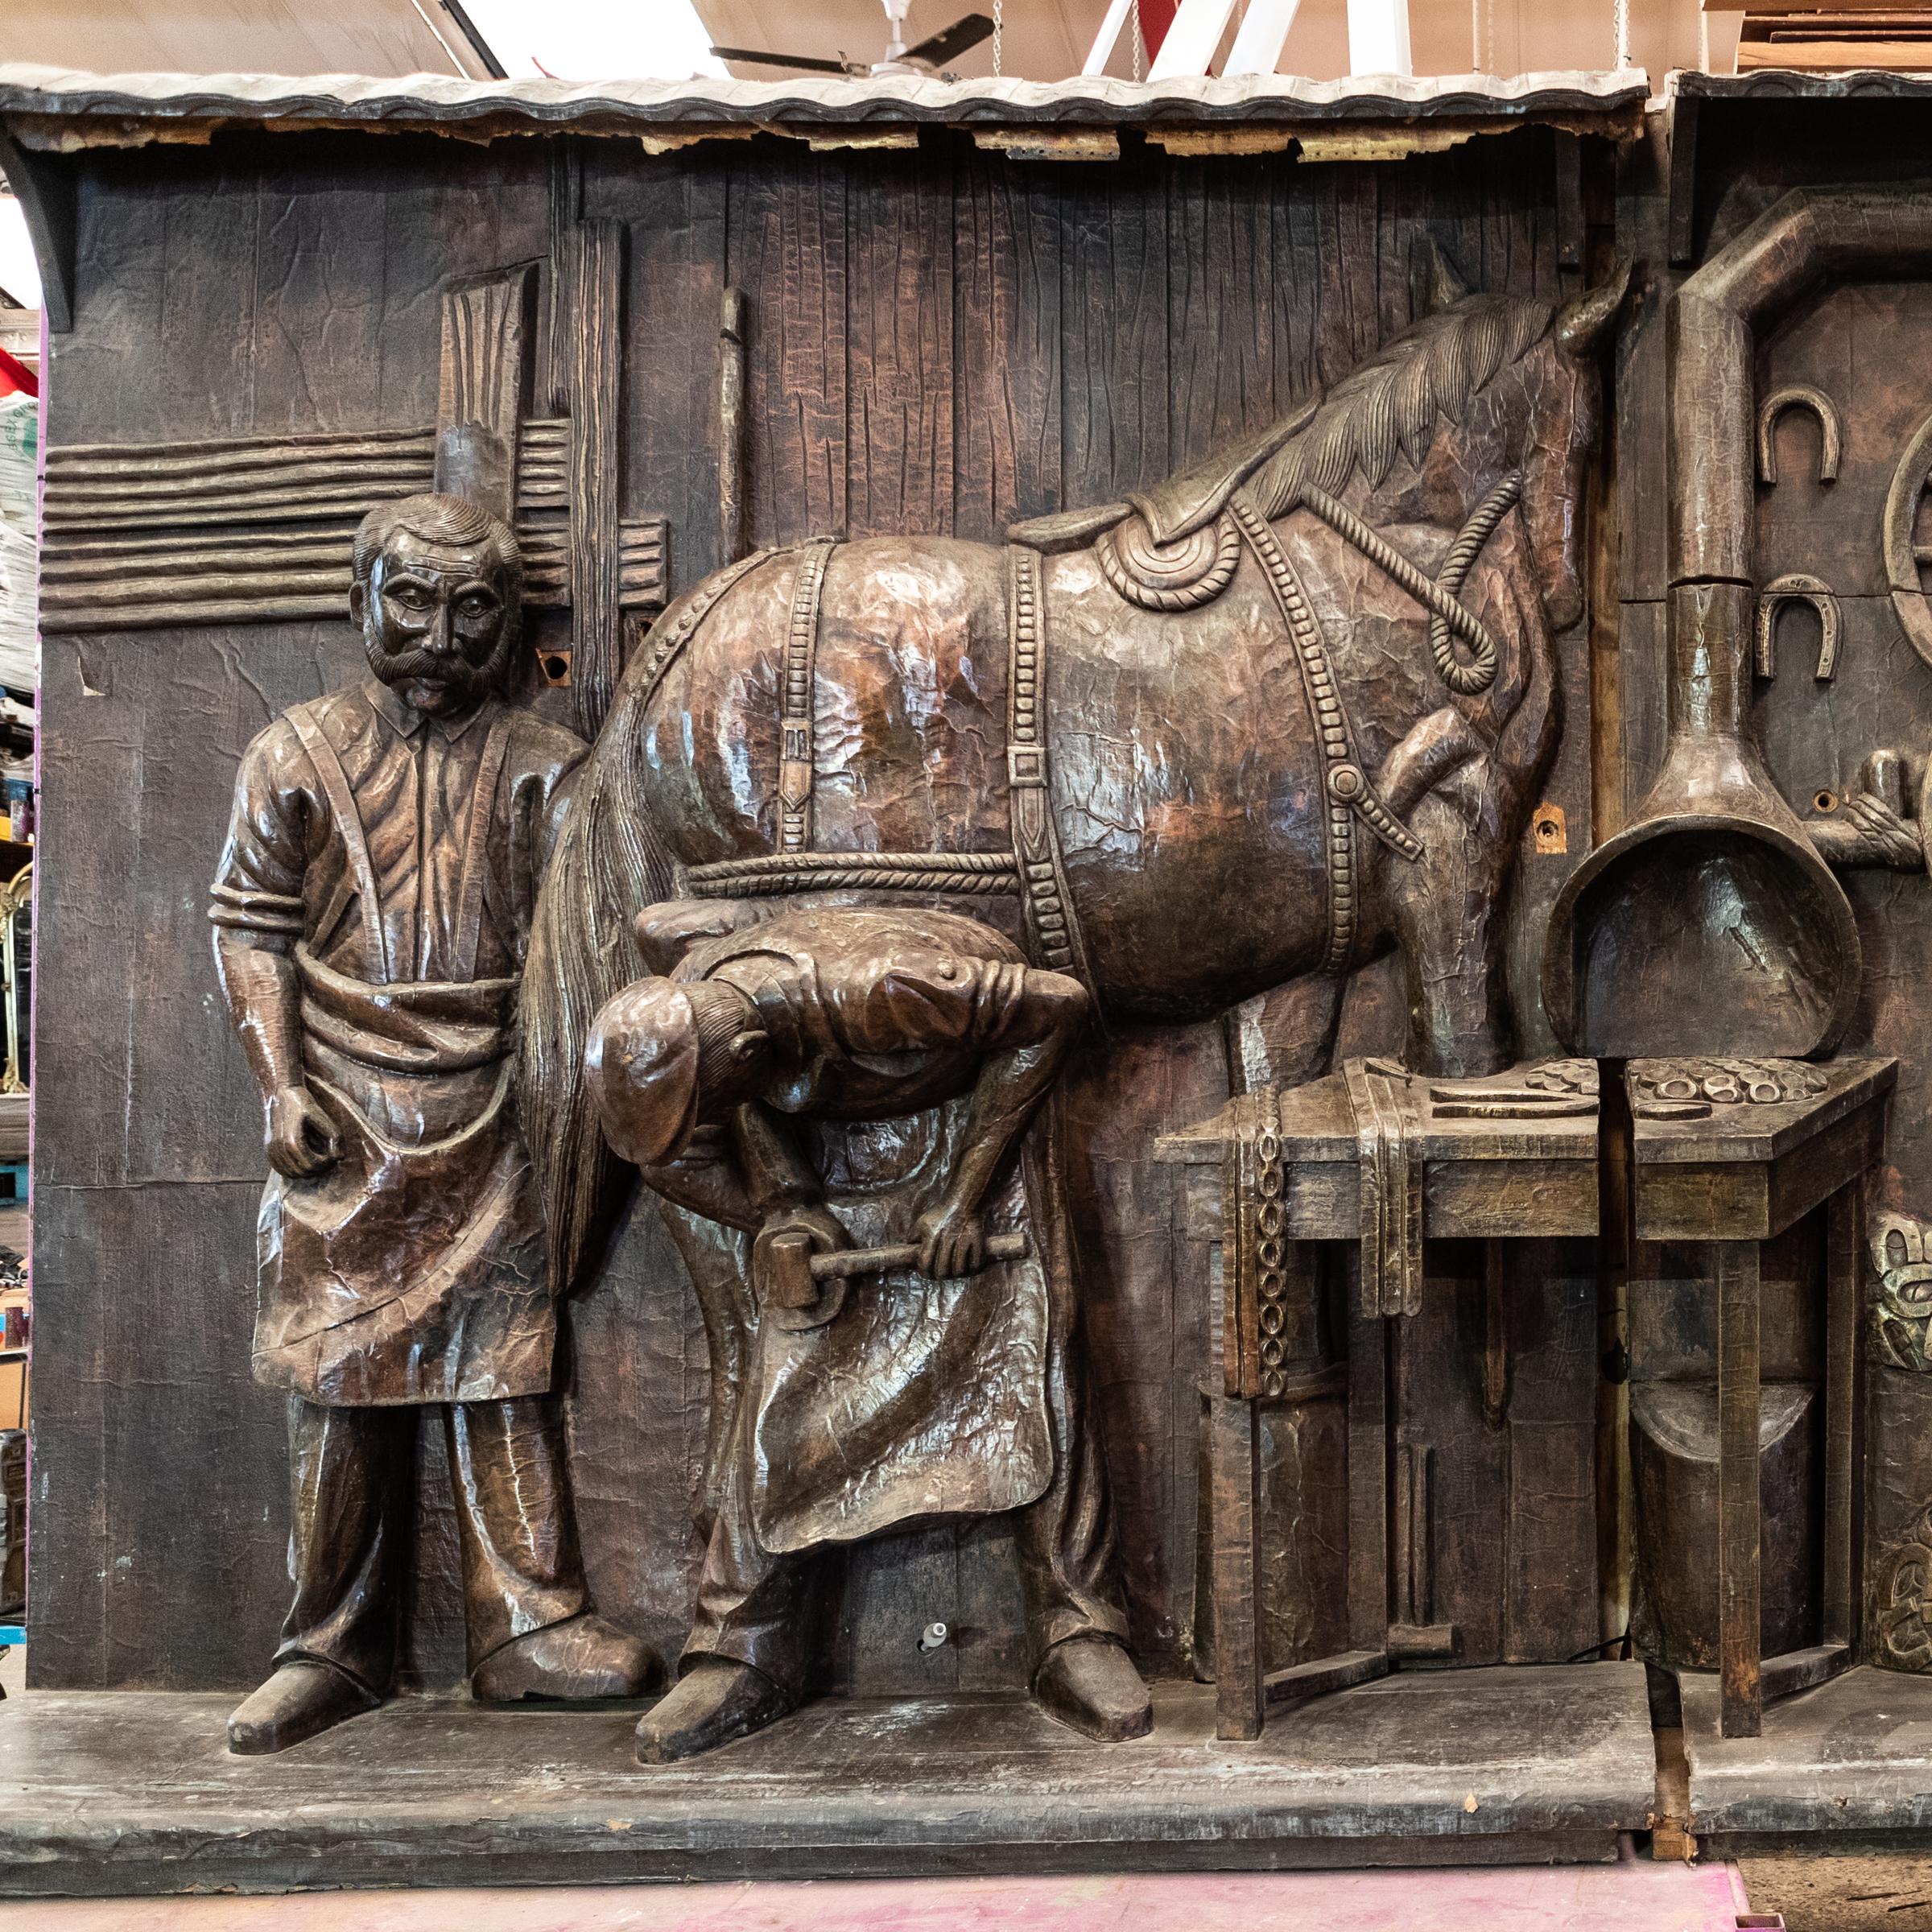 Ein wahrhaft einzigartiges Stück Londoner Geschichte ist dieser Hufschmied und Pferdepfleger, der mit Pferden arbeitet, die vom weltberühmten Camden Loch Market zurückgeholt wurden.

Die Skulpturen und Reliefs, die einst den Alten Marktstall